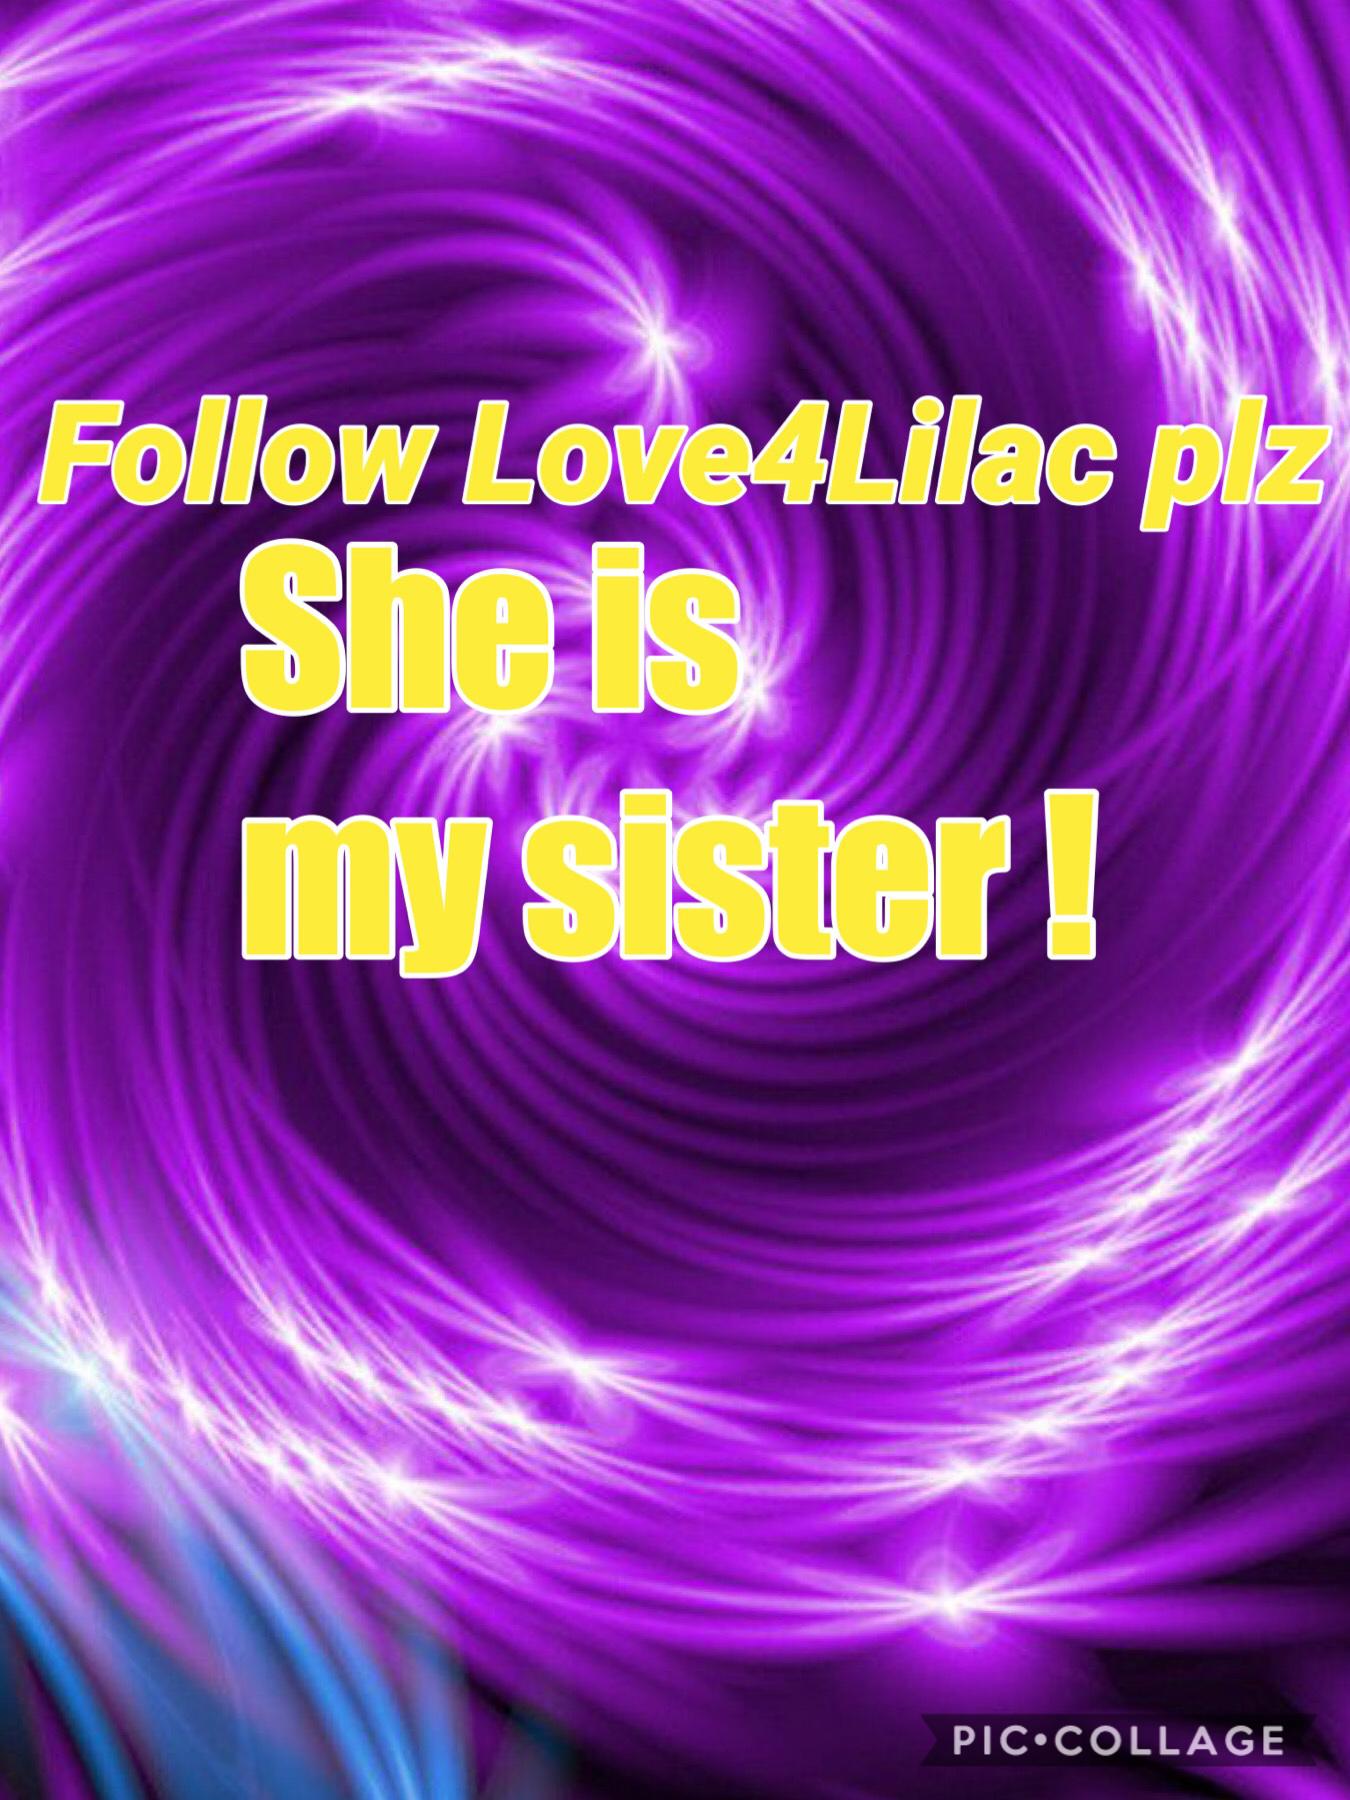 Plz follow her